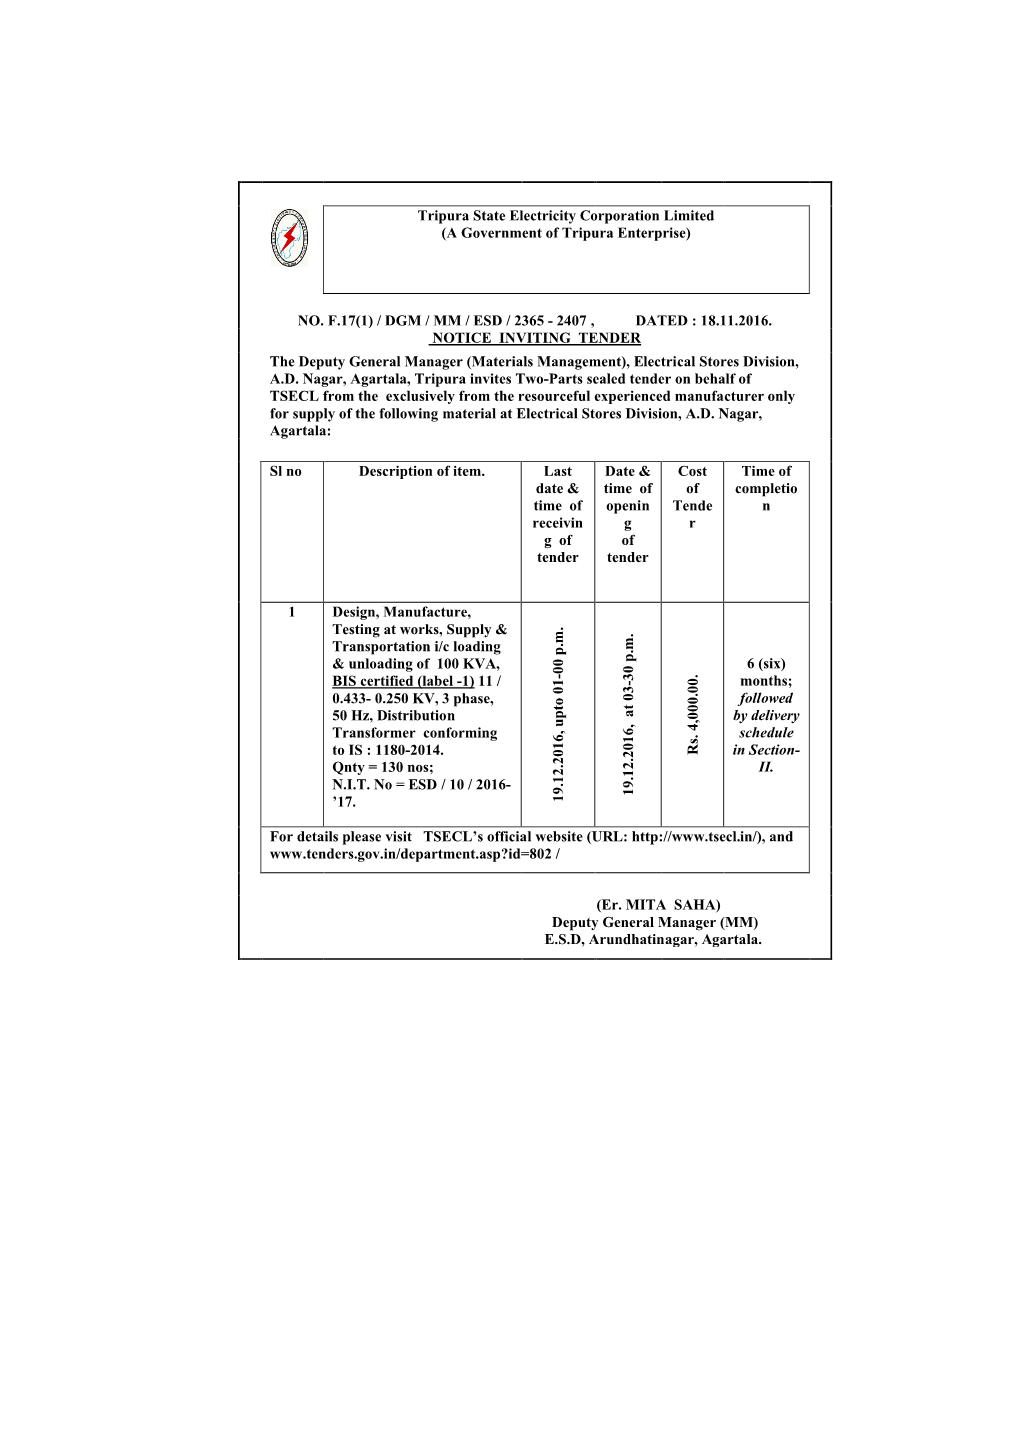 (A Government of Tripura Enterprise) NO. F.17(1) / DGM / MM